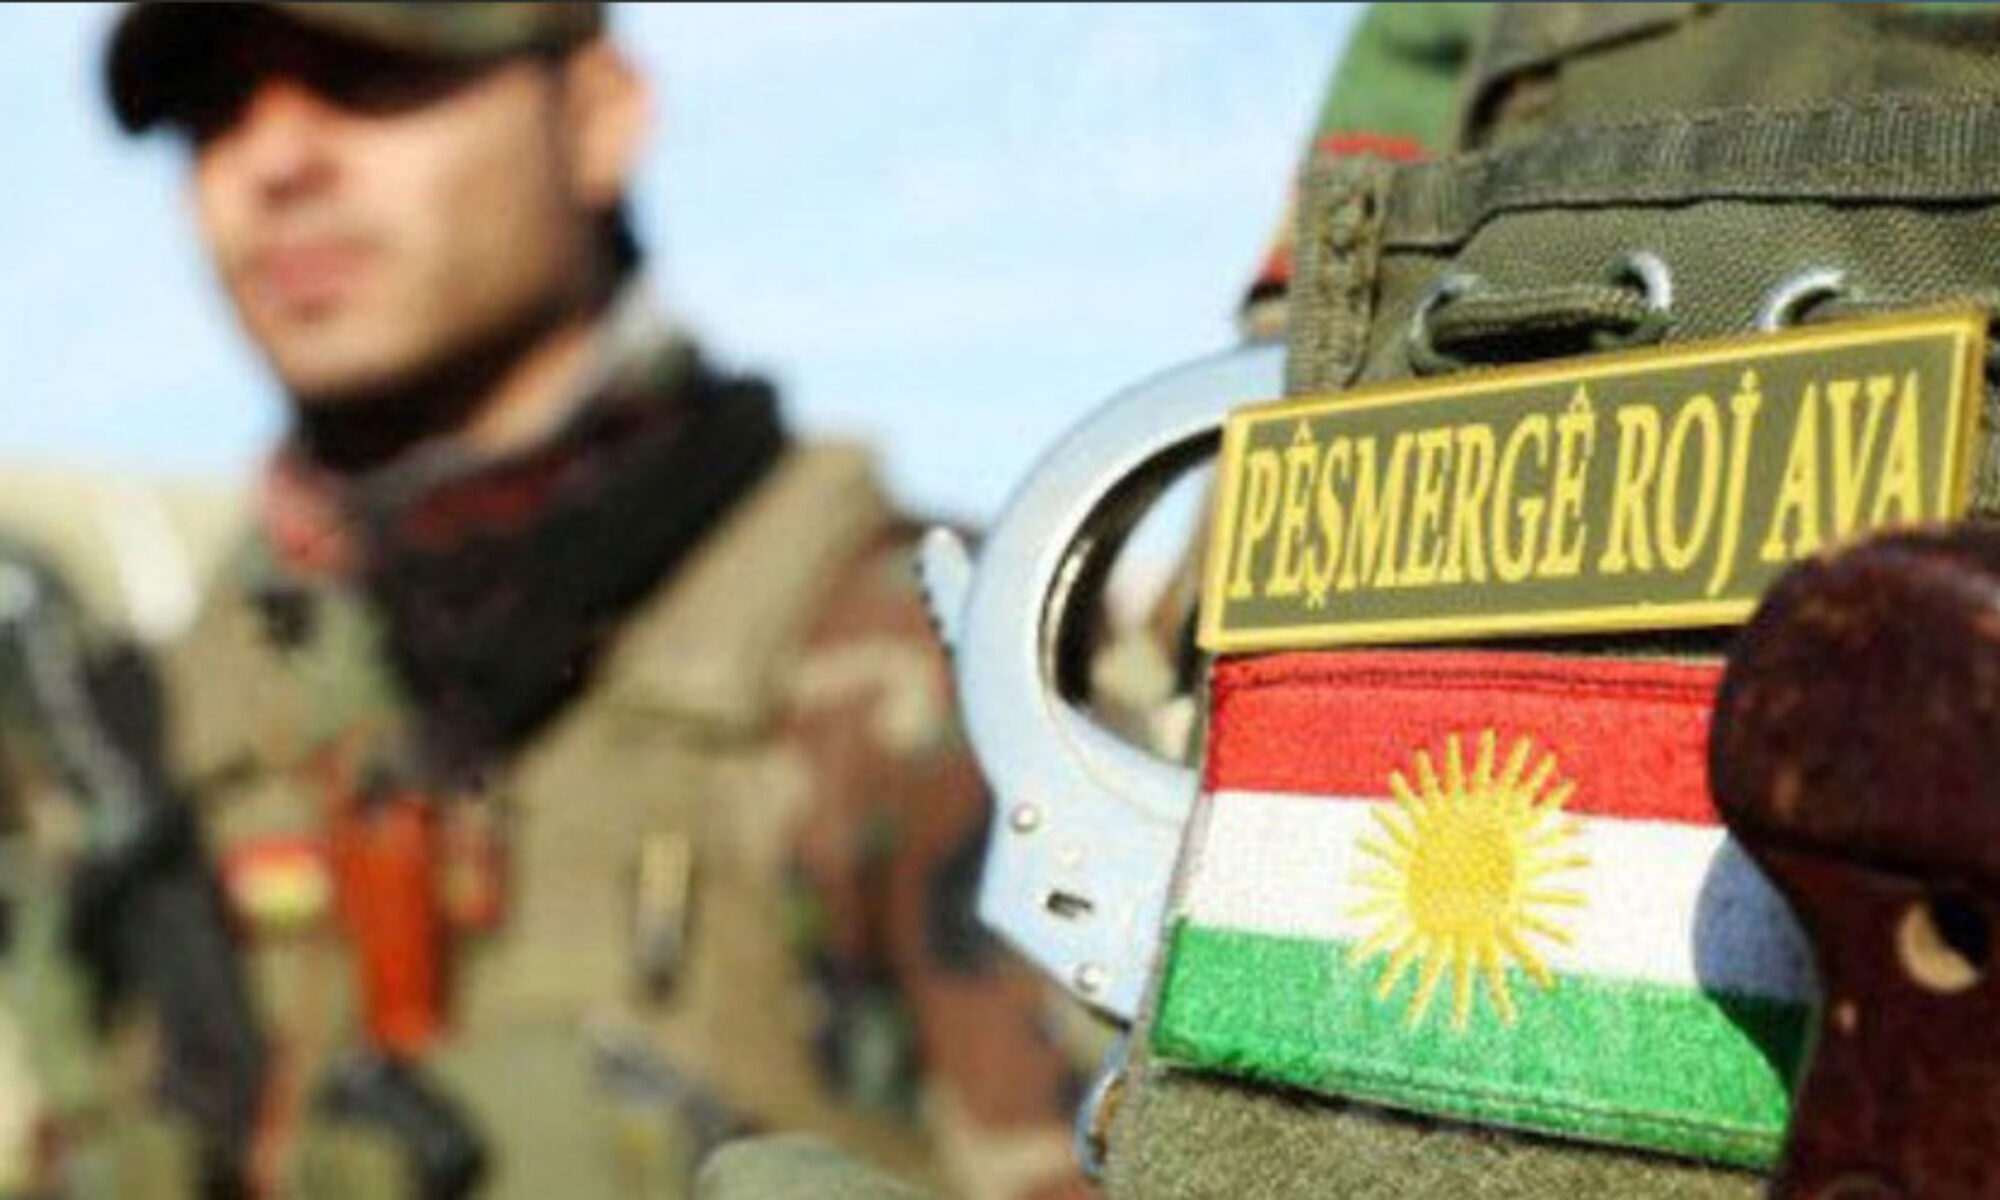 PKK, Rojava’da Roj Peşmergelerinin ailelerini sınır dışı etmekle tehdit ediyor